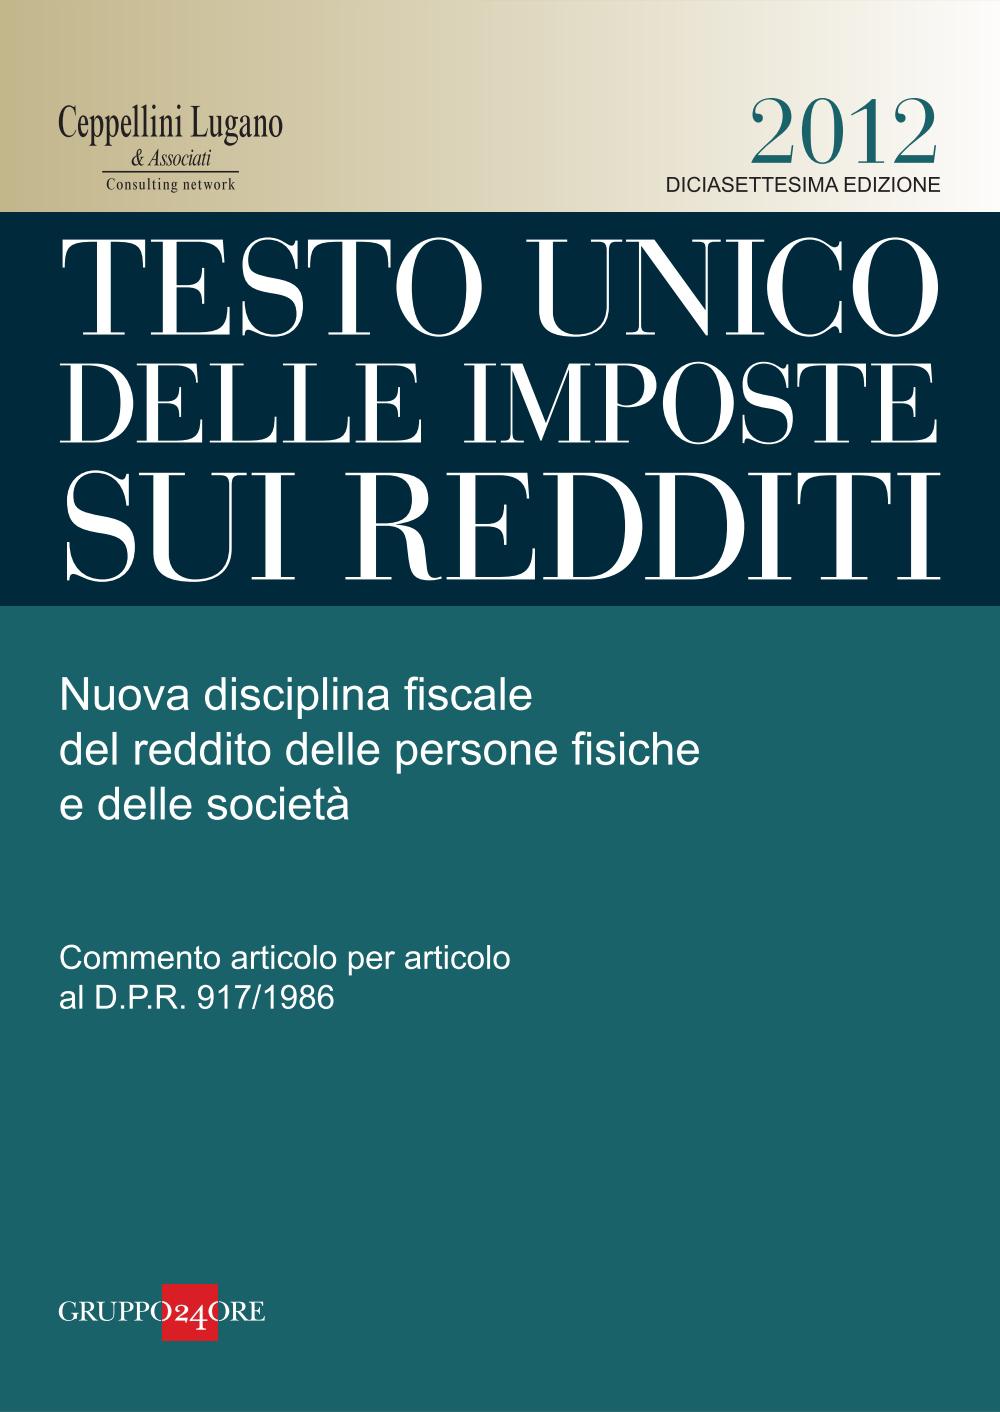 Testo unico delle imposte sui redditi 2012 - Ceppellini Lugano & Associati